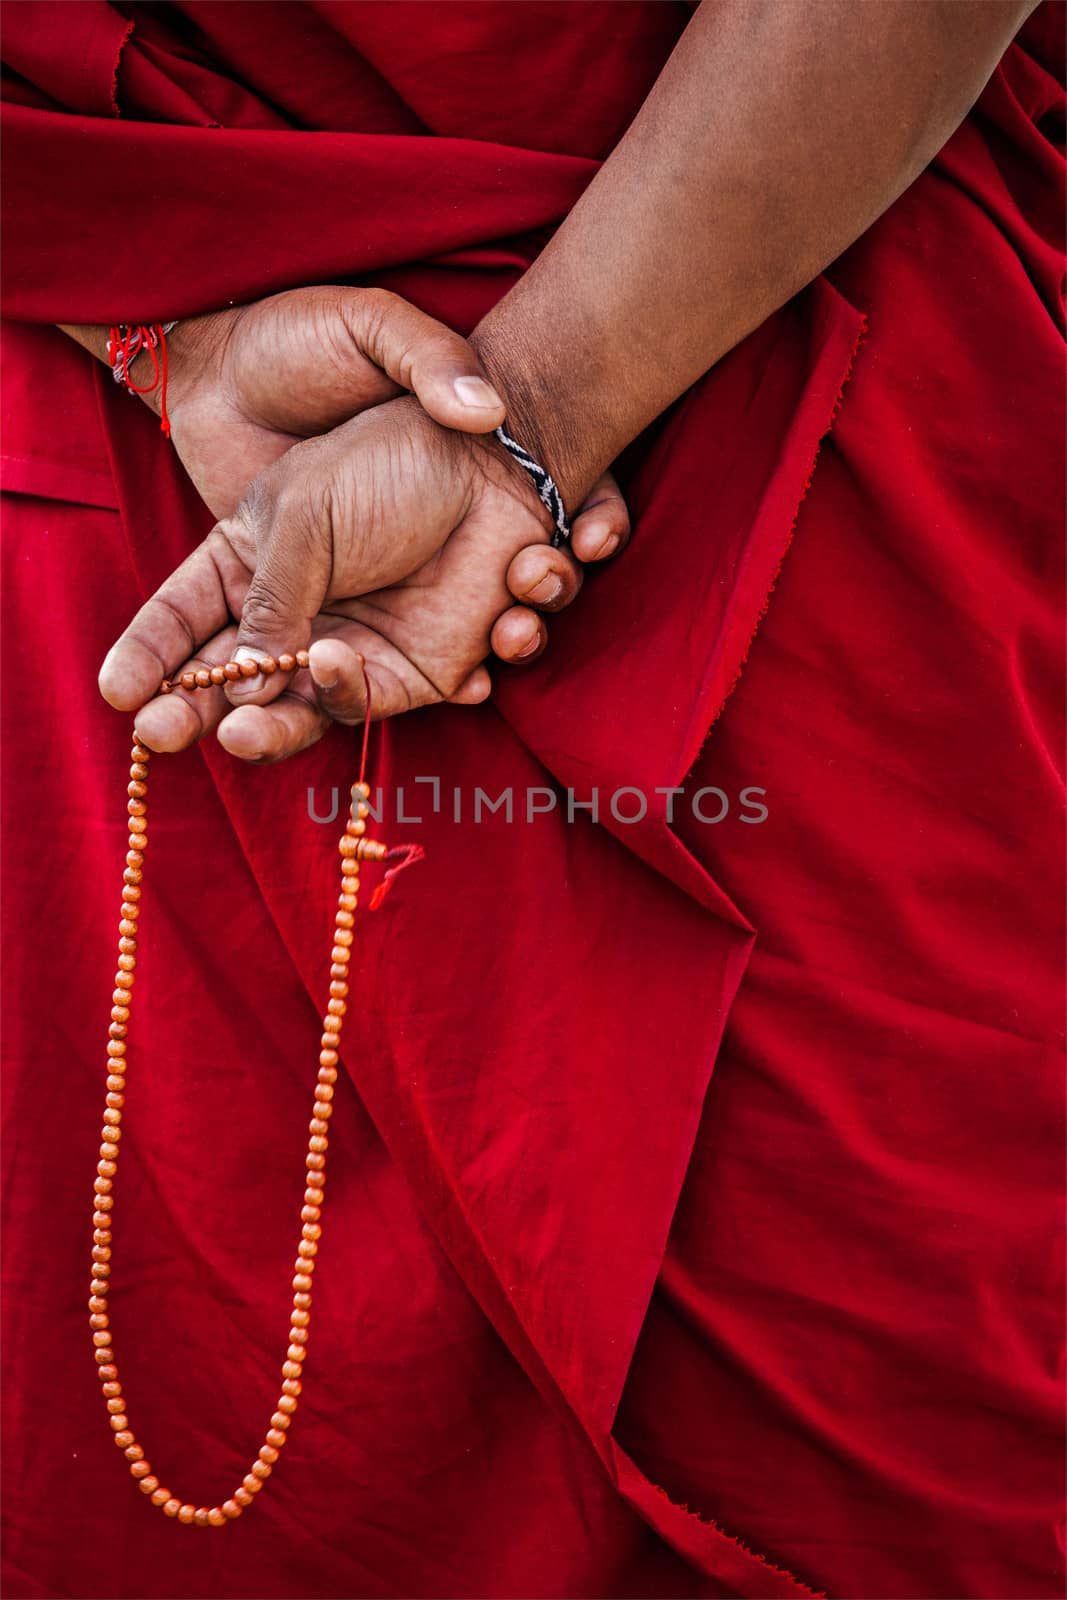 Tibetan Buddhism - prayer beads in Buddhist monk hands. Ladakh, India